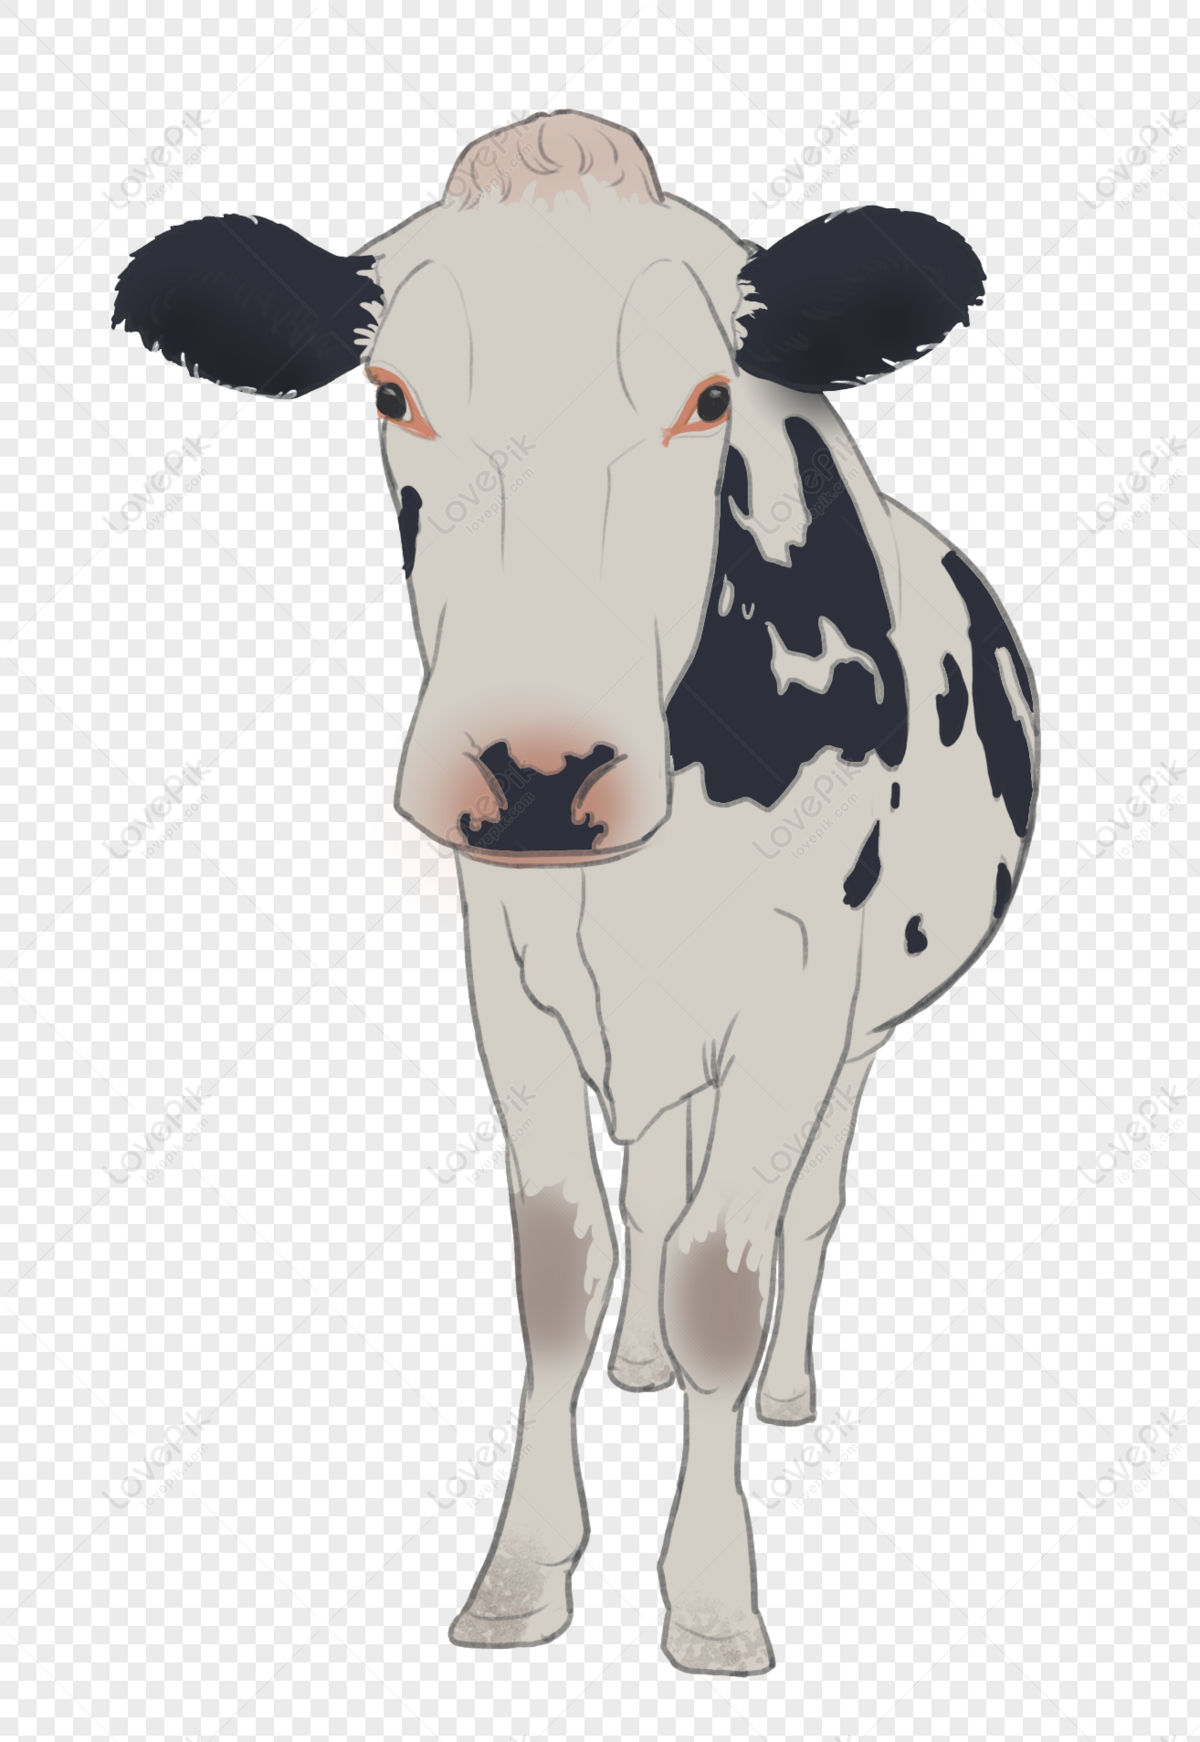 Cow Anime by Taschentuch on DeviantArt